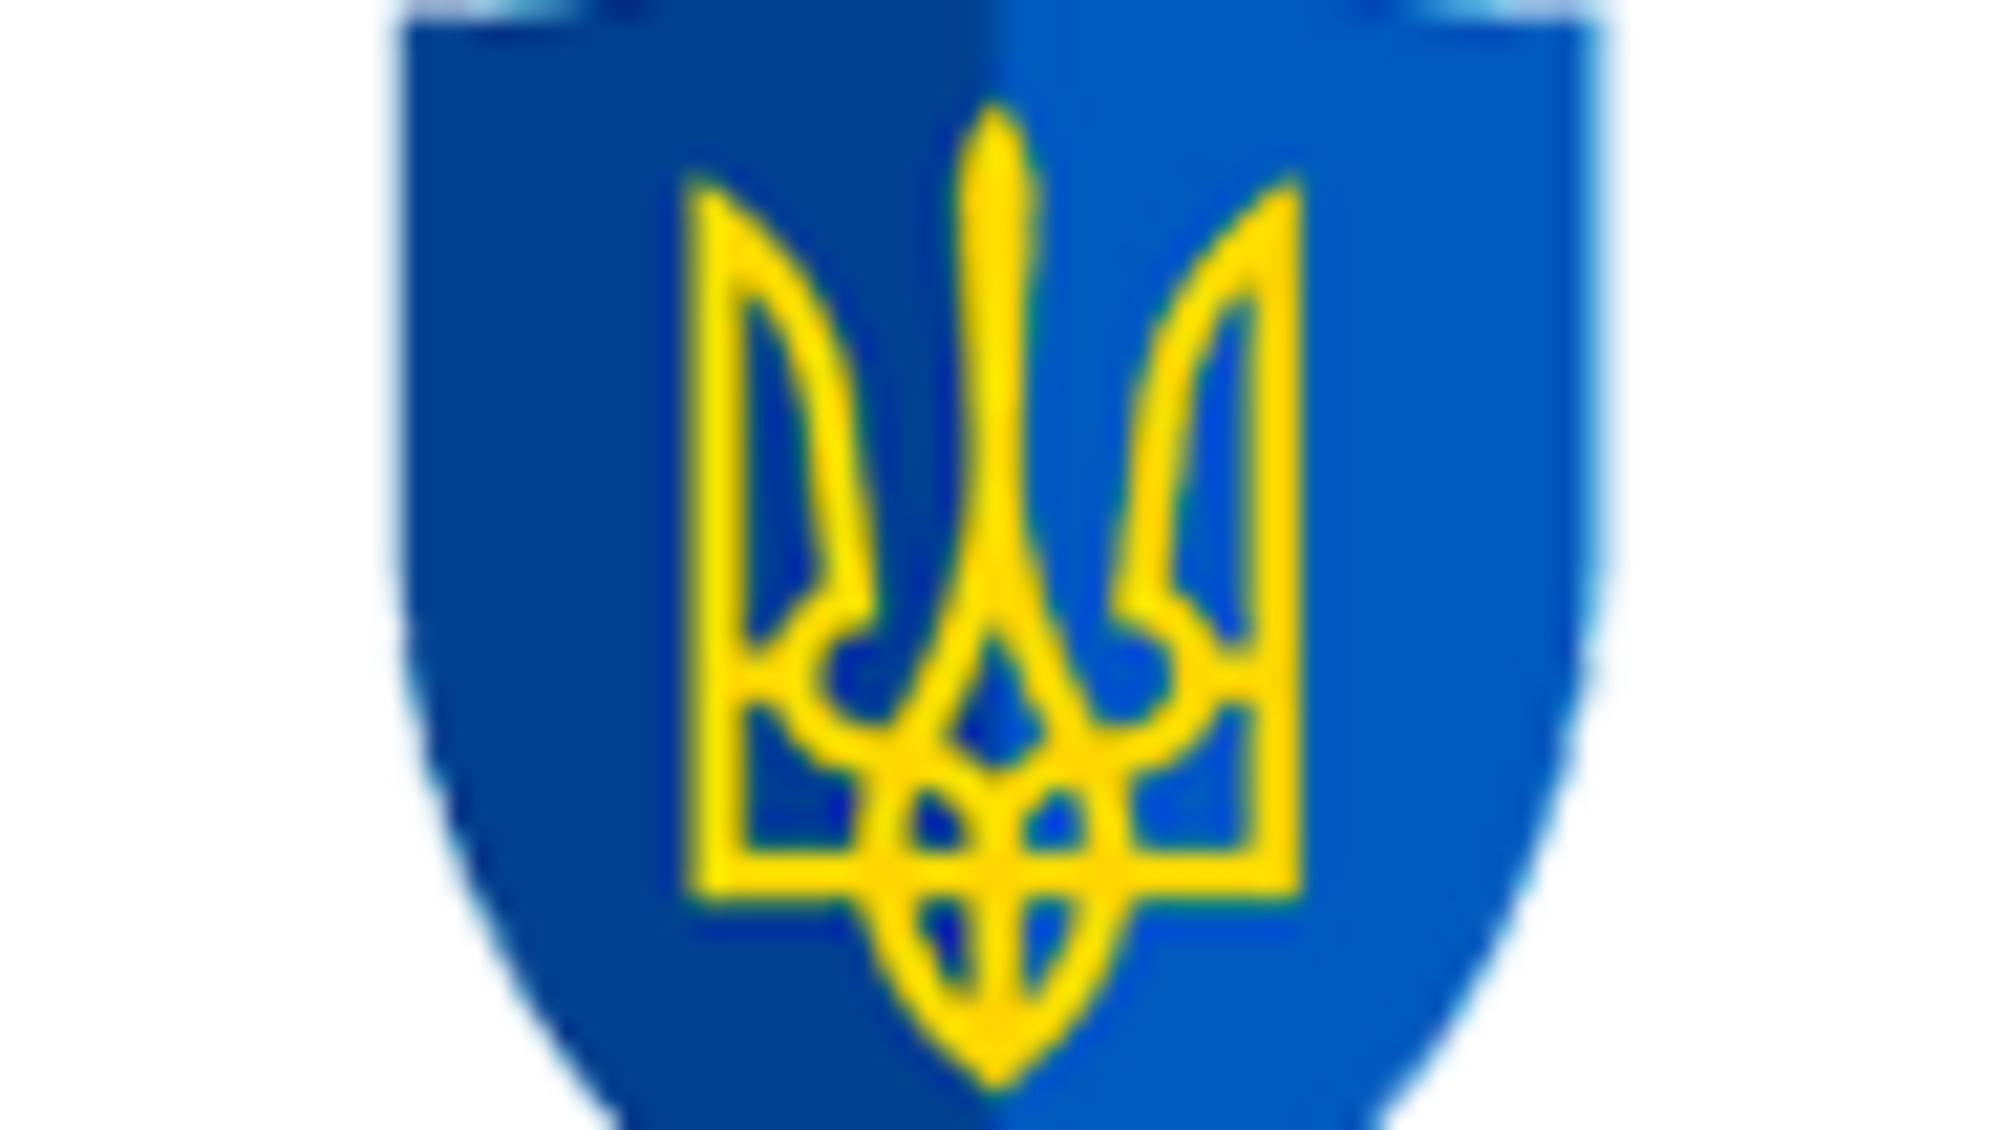 Колишній депутат сільради на Луганщині підозрюється в організації псевдореферендуму для зміни меж території України